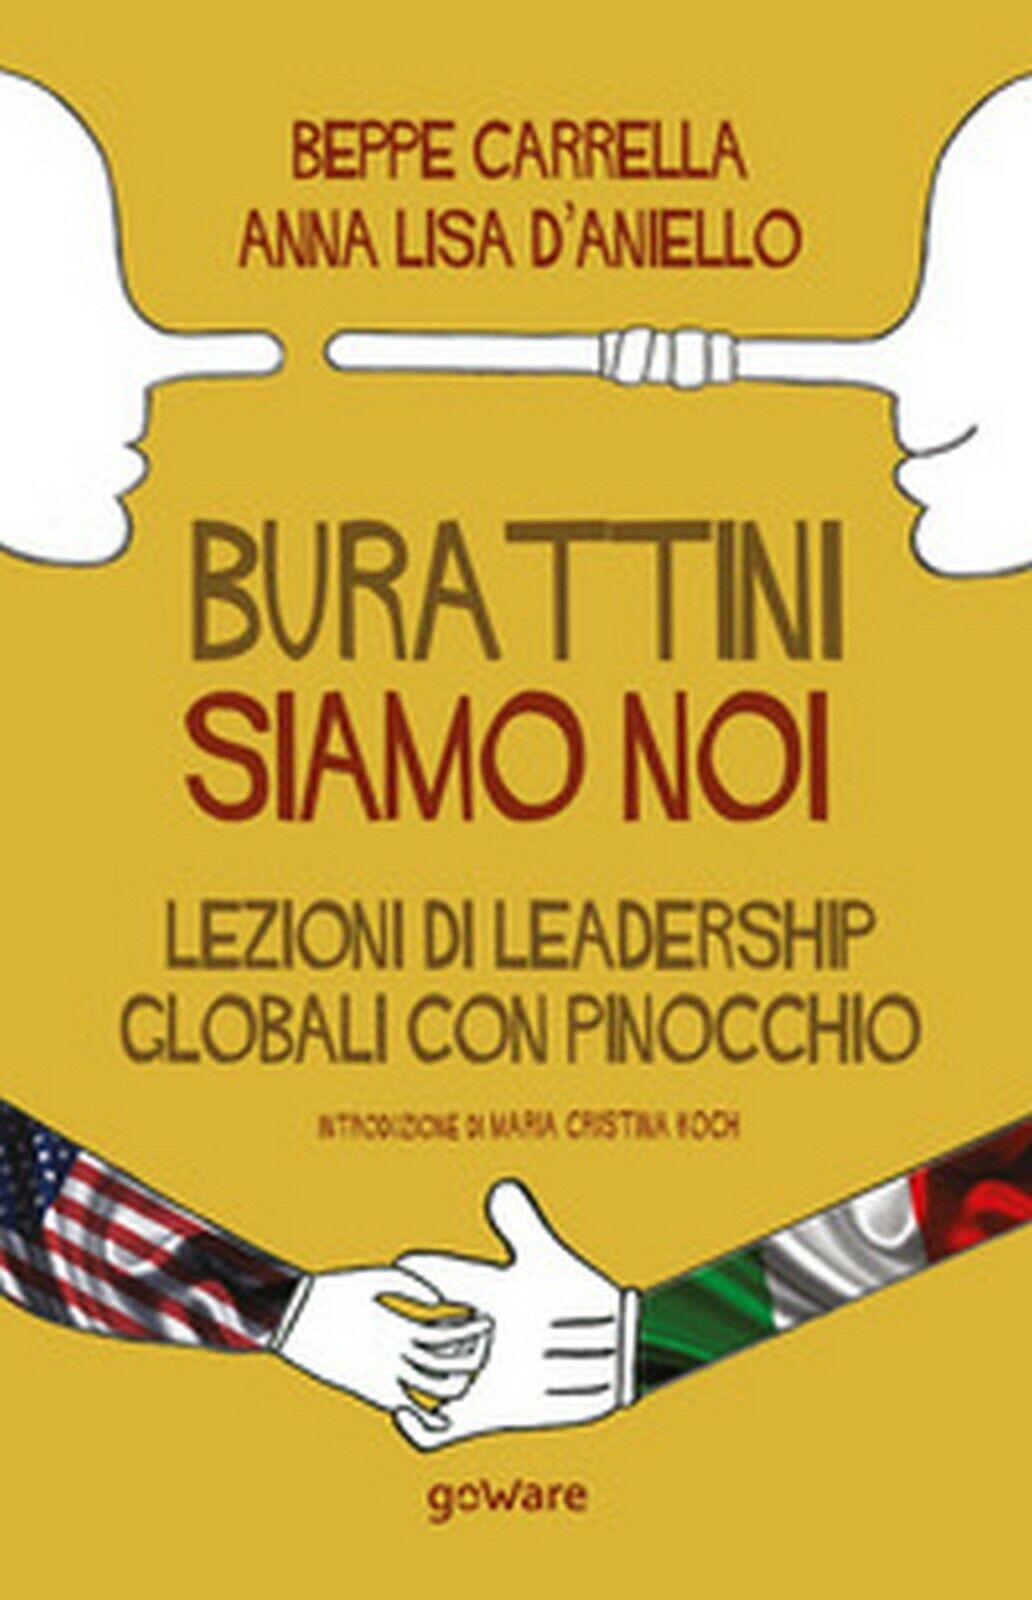 Burattini siamo noi. Lezioni di leadership globali con Pinocchio, GoWare, 2020 libro usato